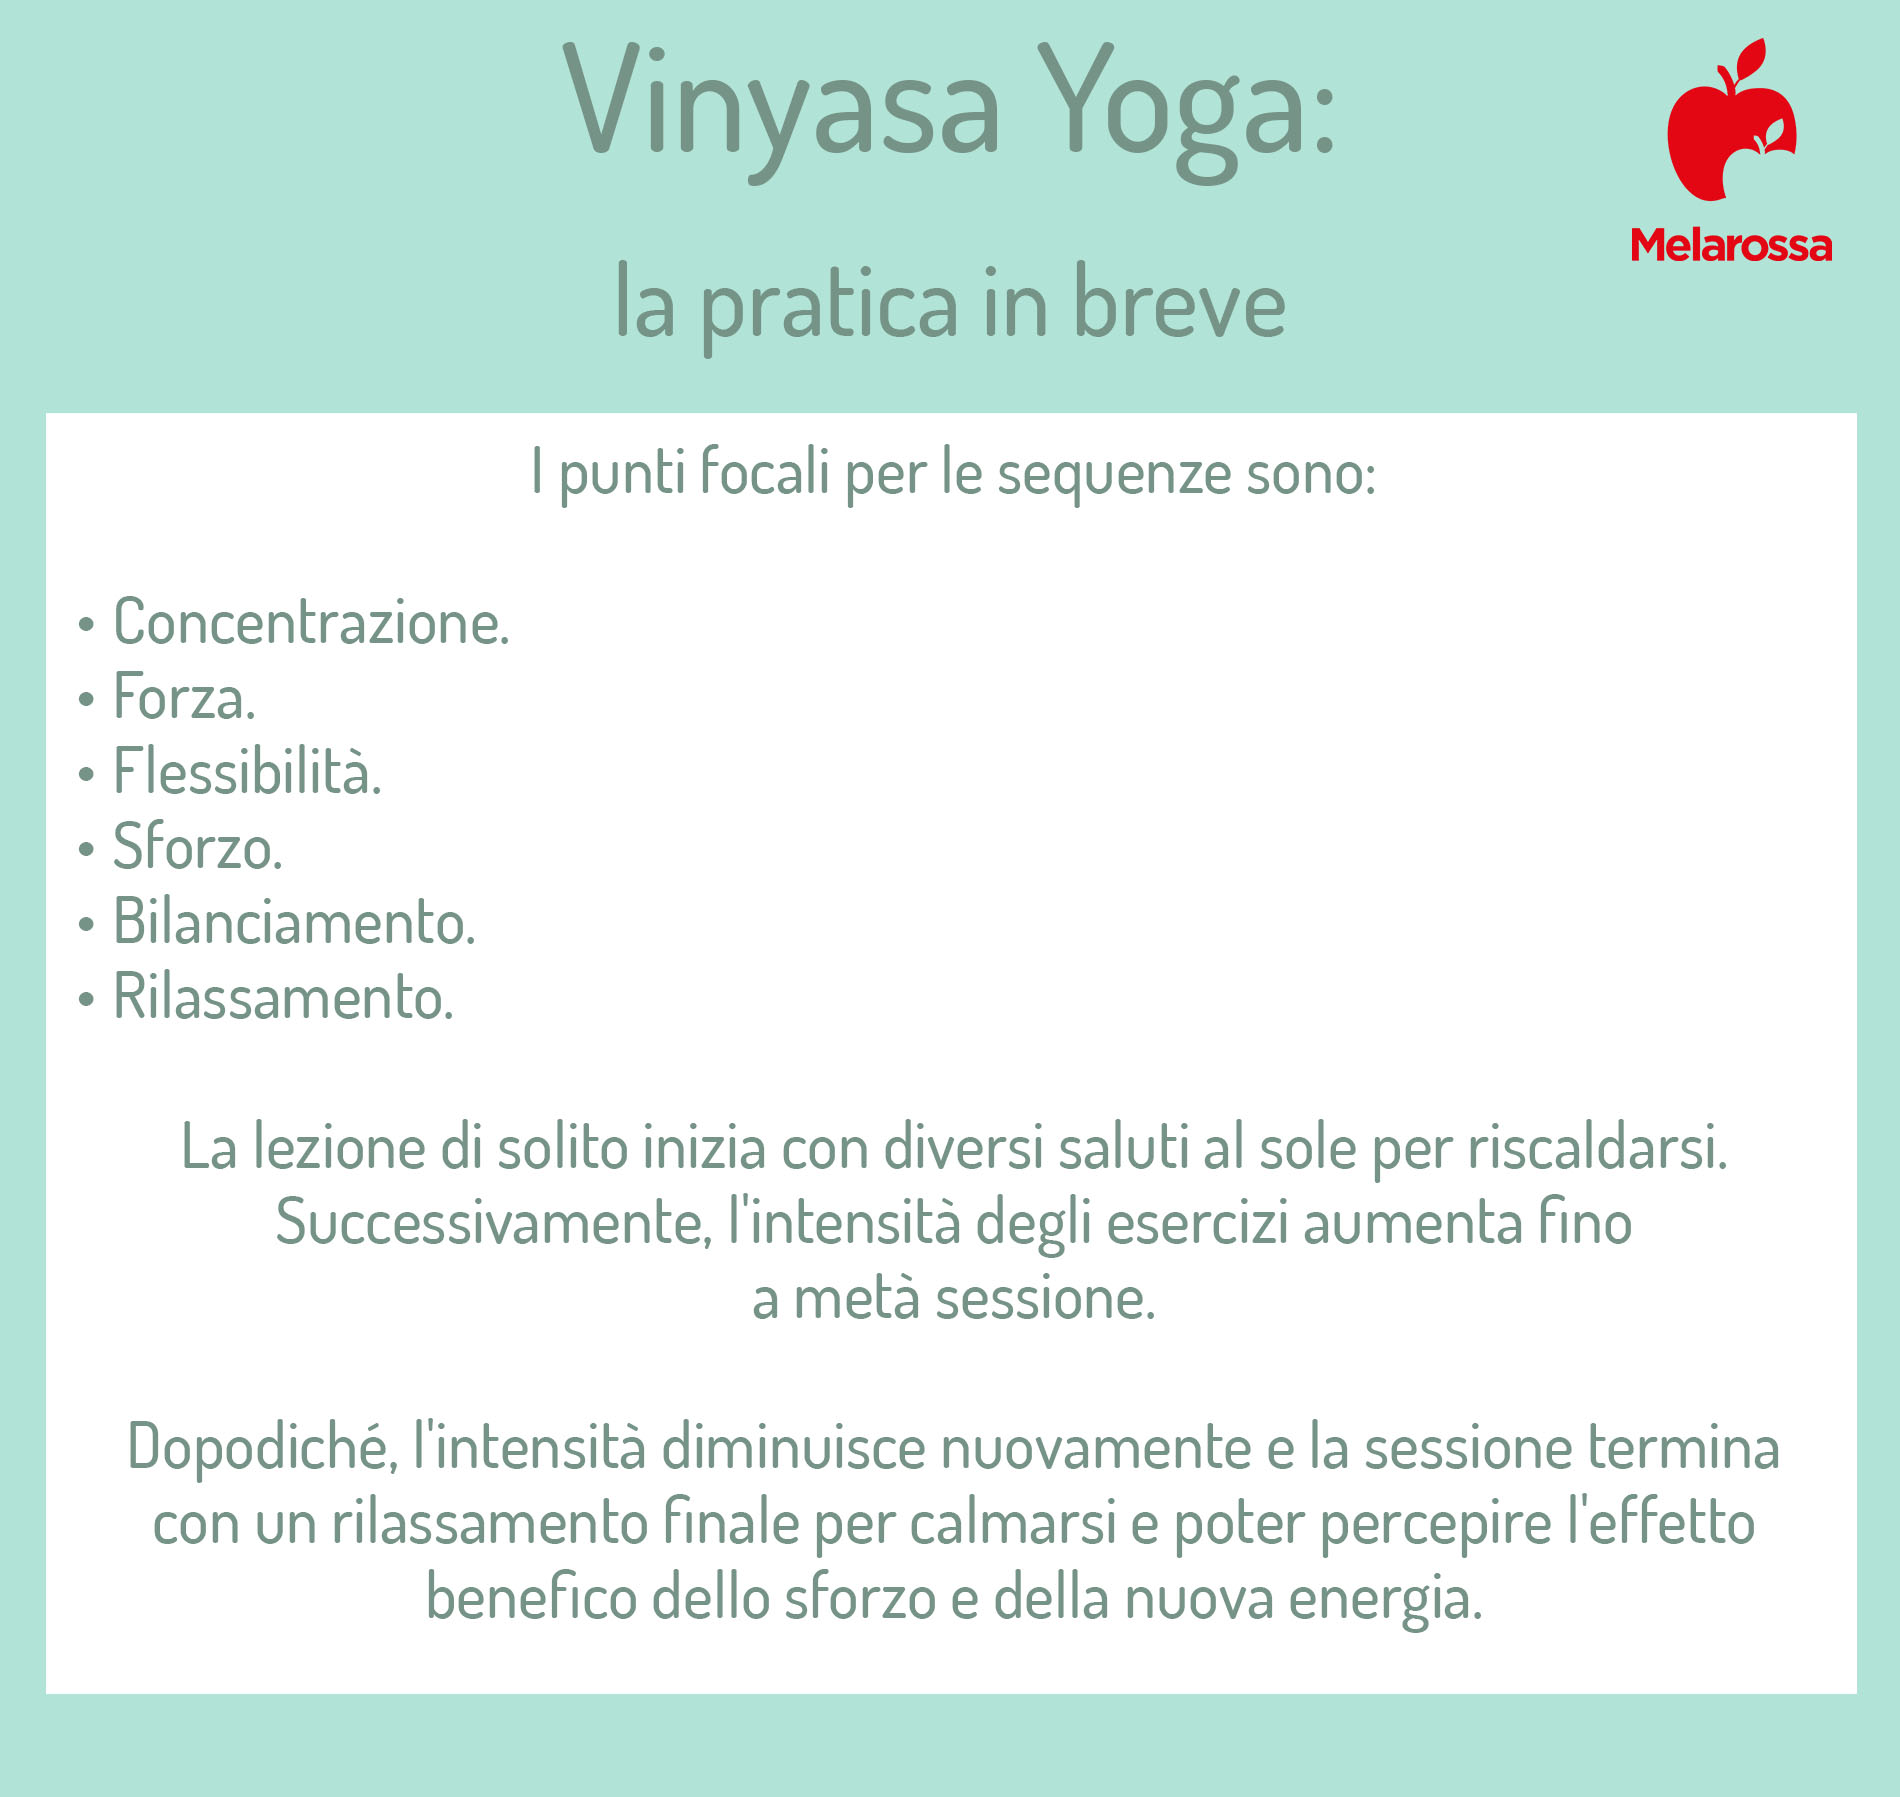 Vinyasa yoga la pratica in breve